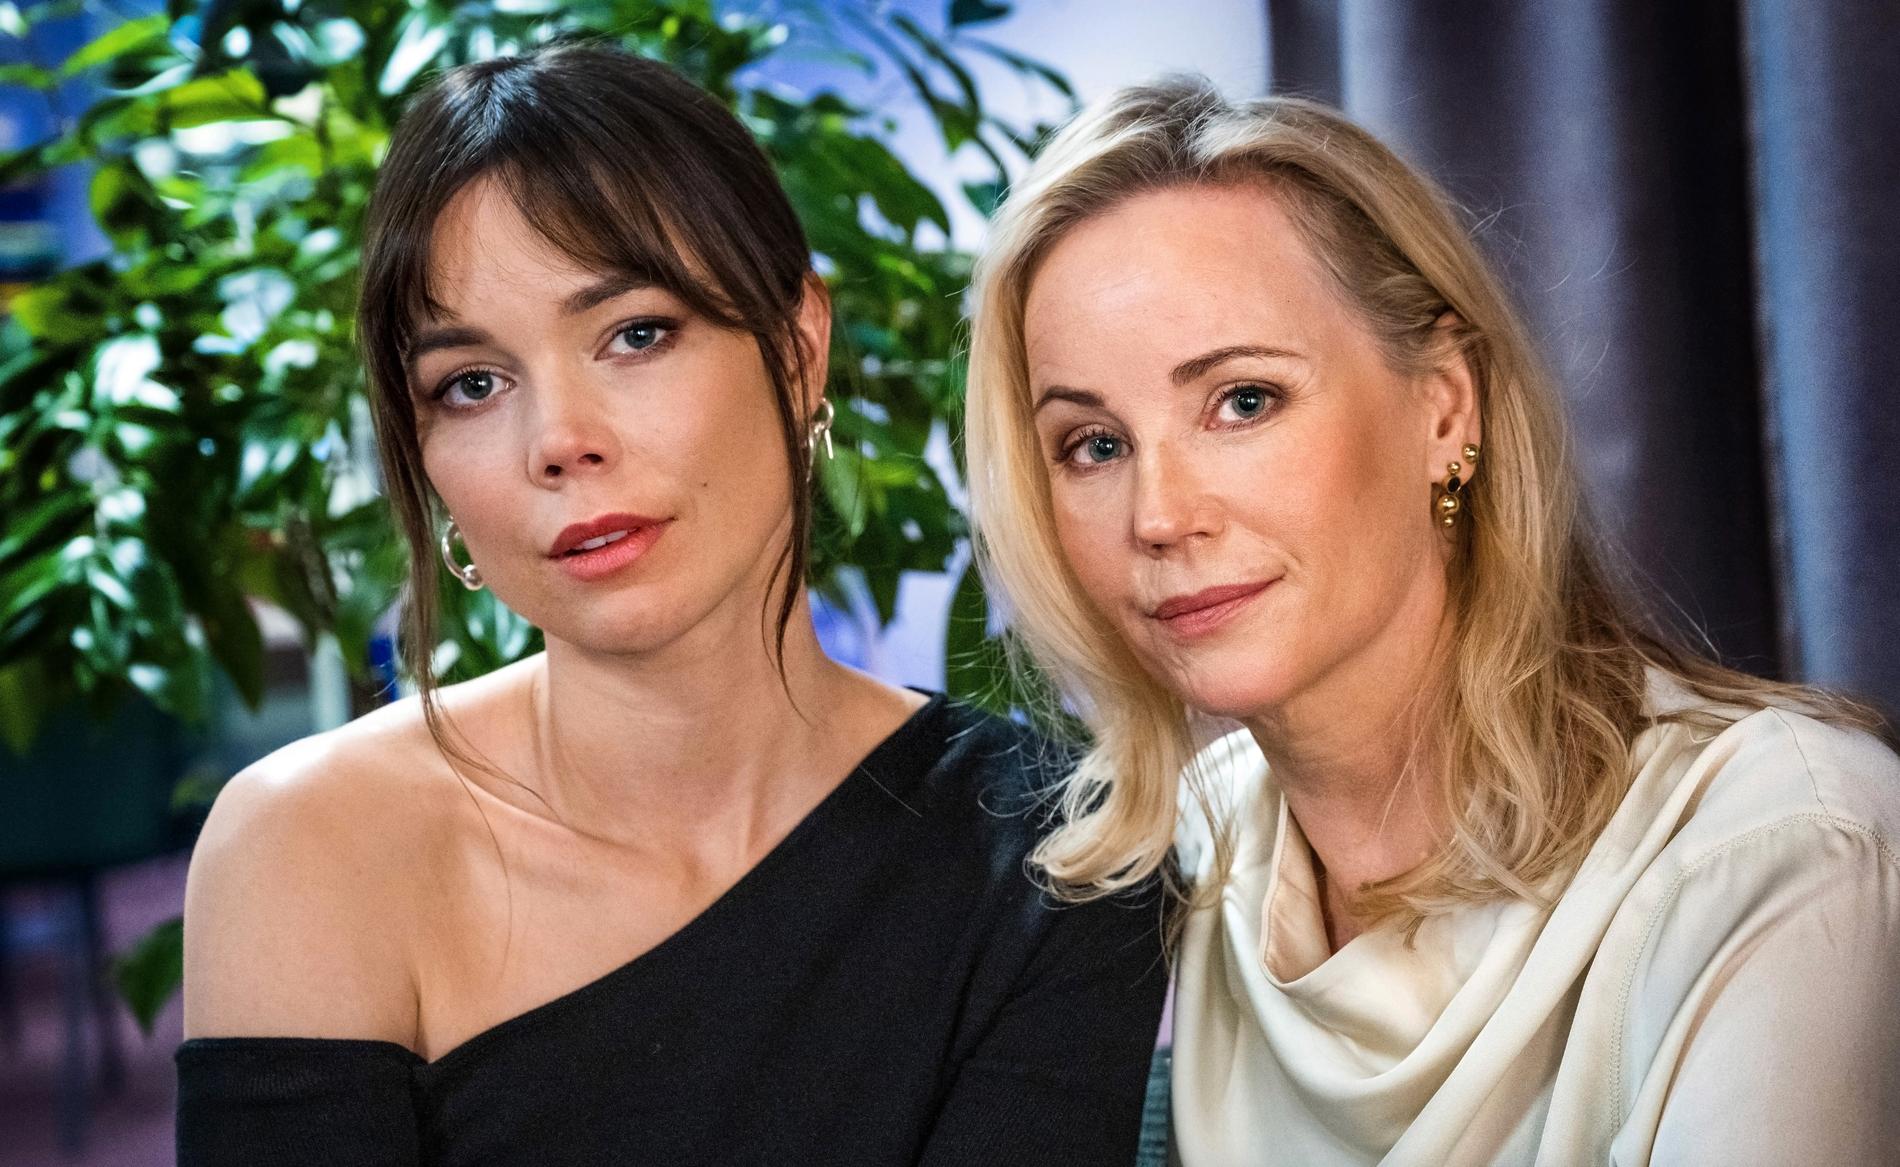 Hedda Stiernstedt och Sofia Helin spelar systrar i TV4 Plays kriminalserie "Sanningen" i jul.